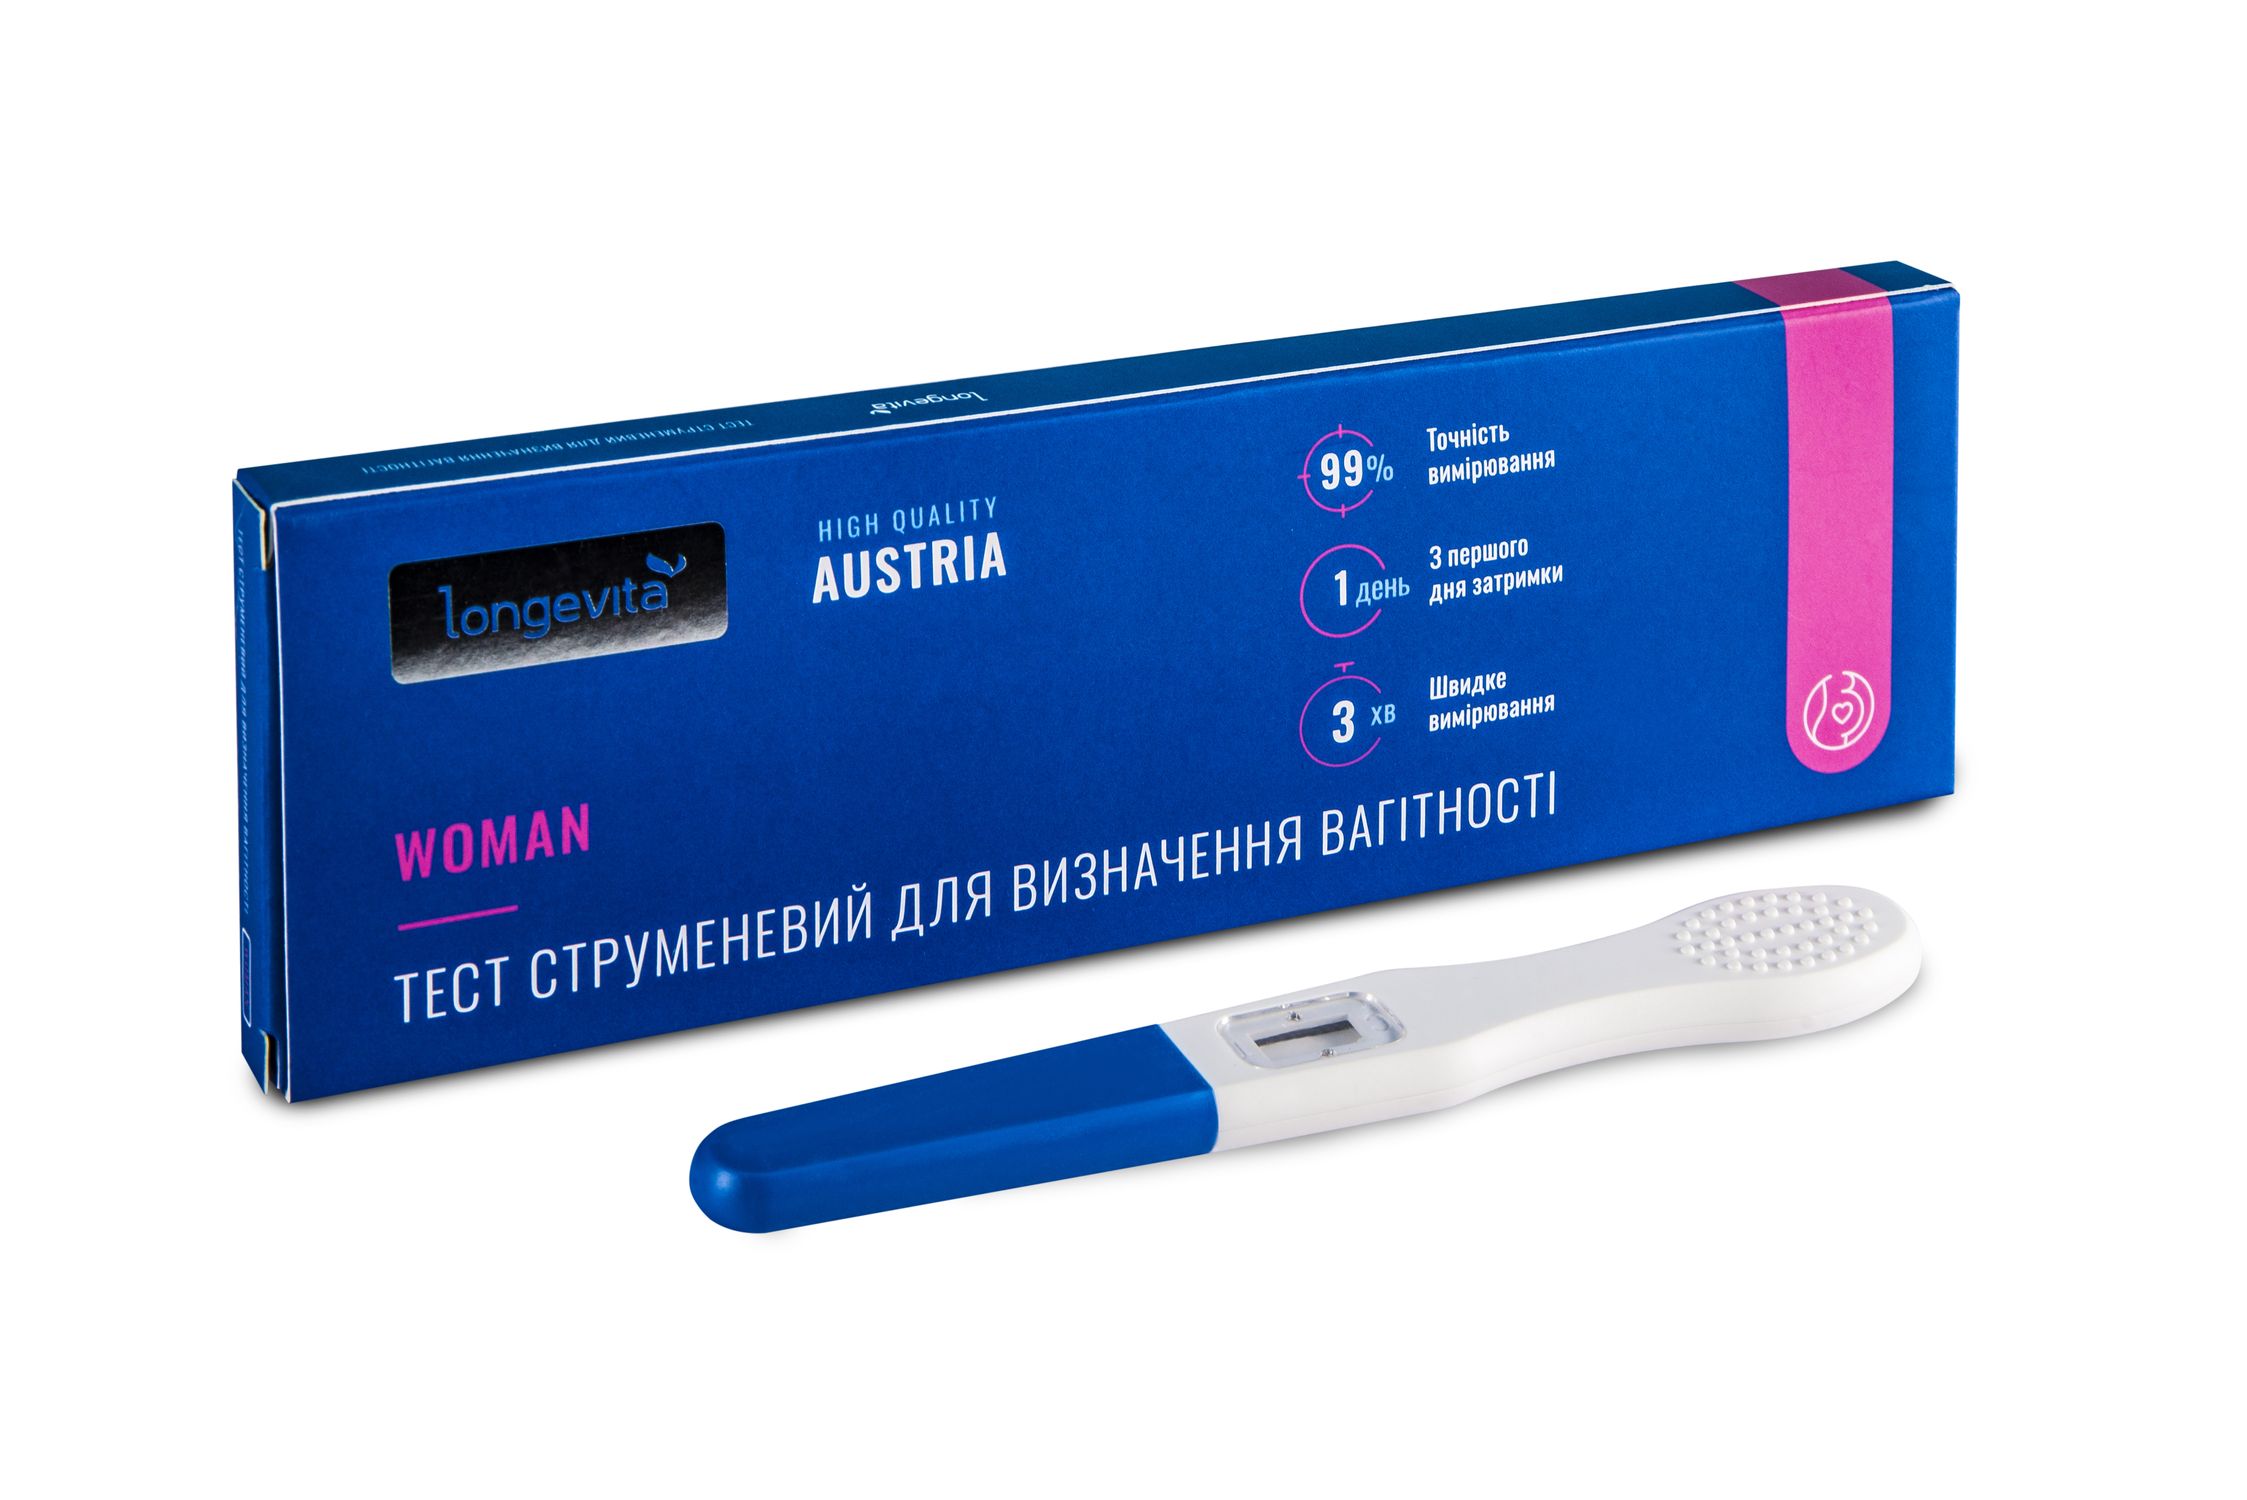 Тест струменевий для визначення вагітності Longevita Woman №1, 1 шт. (TStr/1) - фото 2